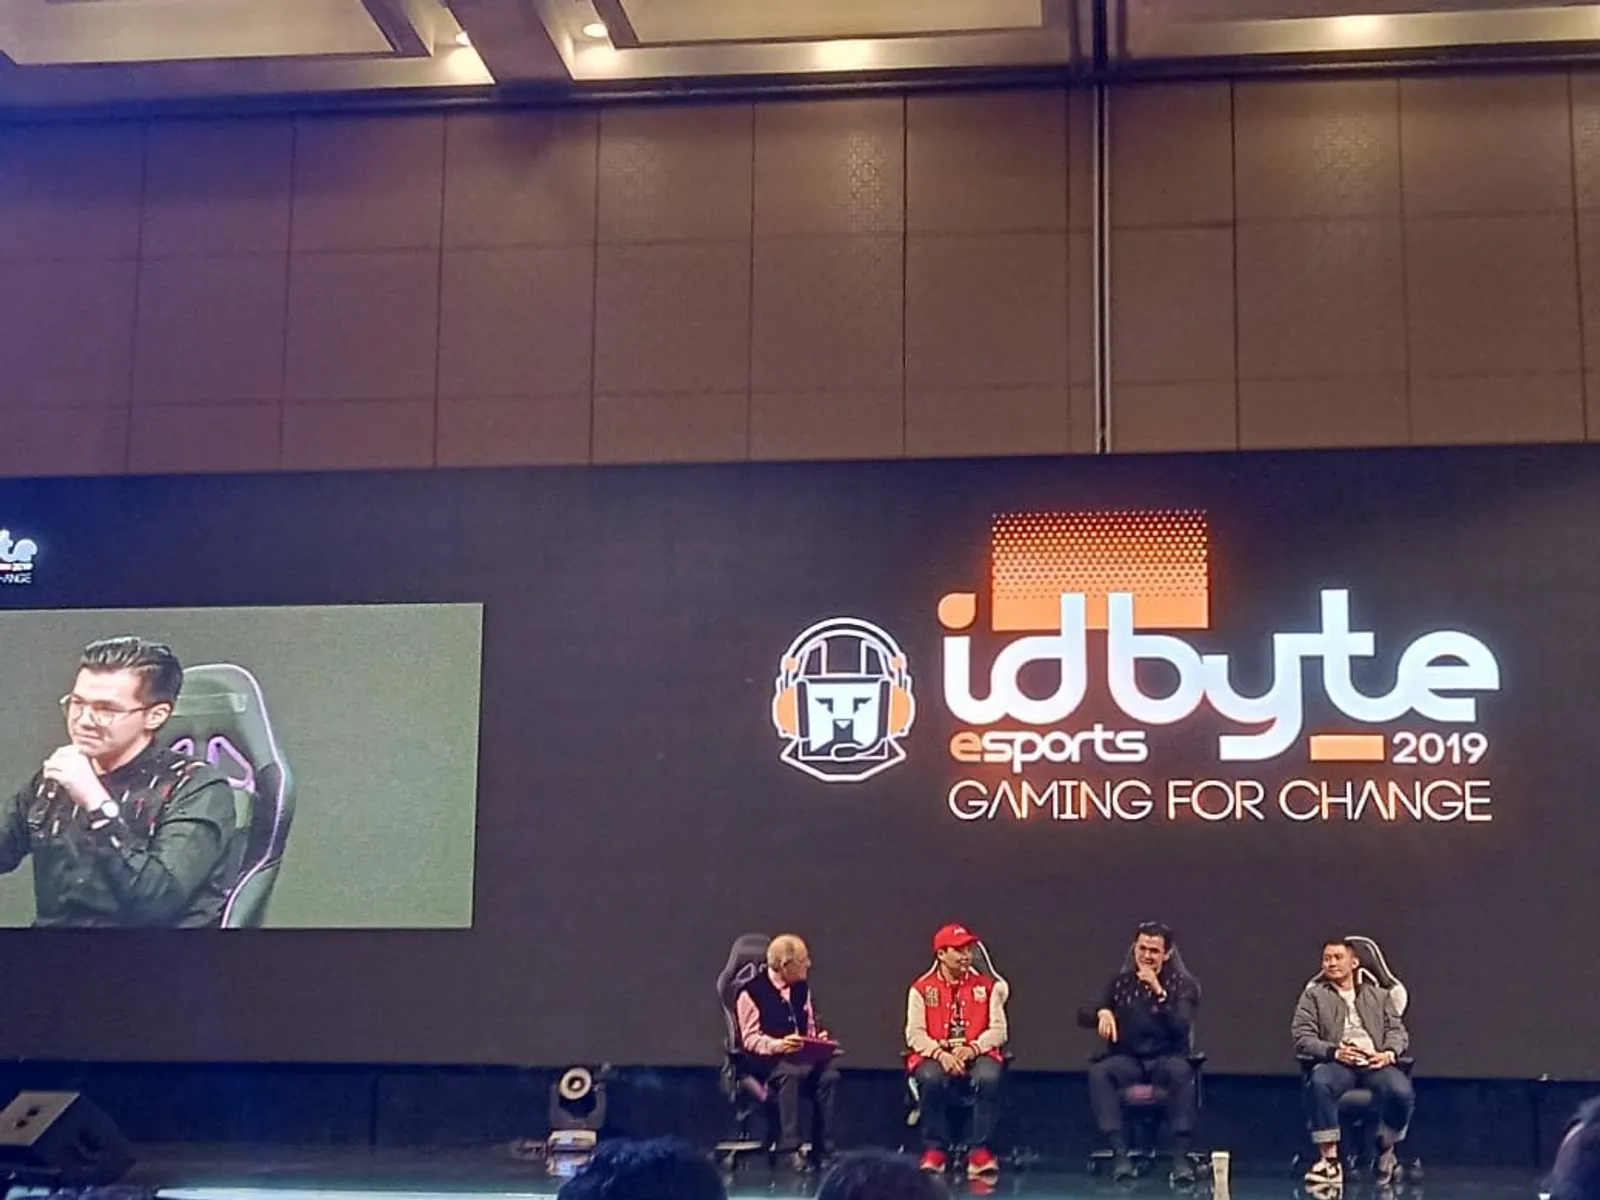 Dari Turnament Sampai Casting, Intip Keseruan "IDBTYE Esports" 2019